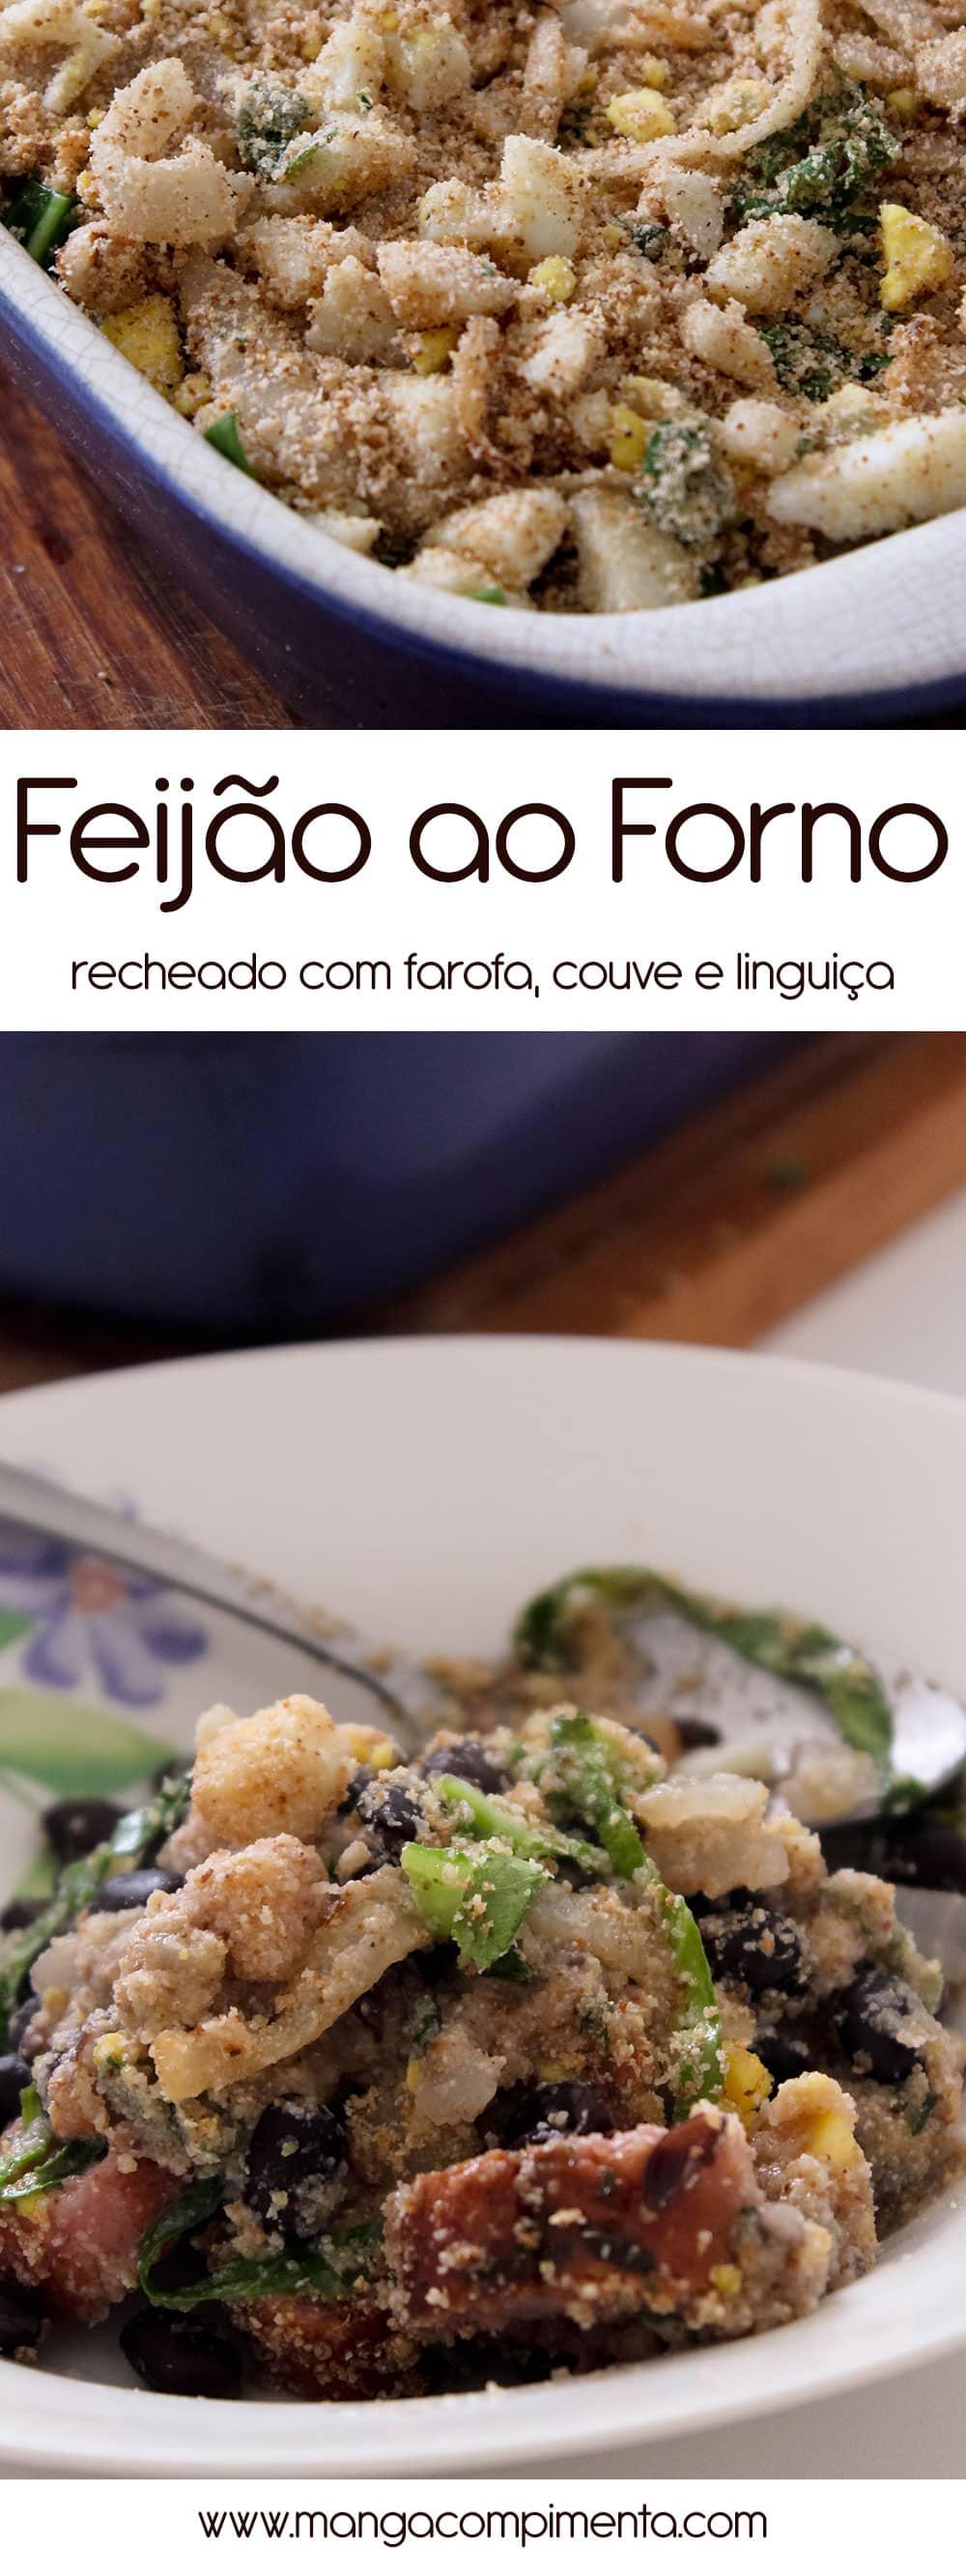 Feijão ao Forno | Recheado com Farofa, Couve e Linguiça, para um almoço especial de família no final de semana!